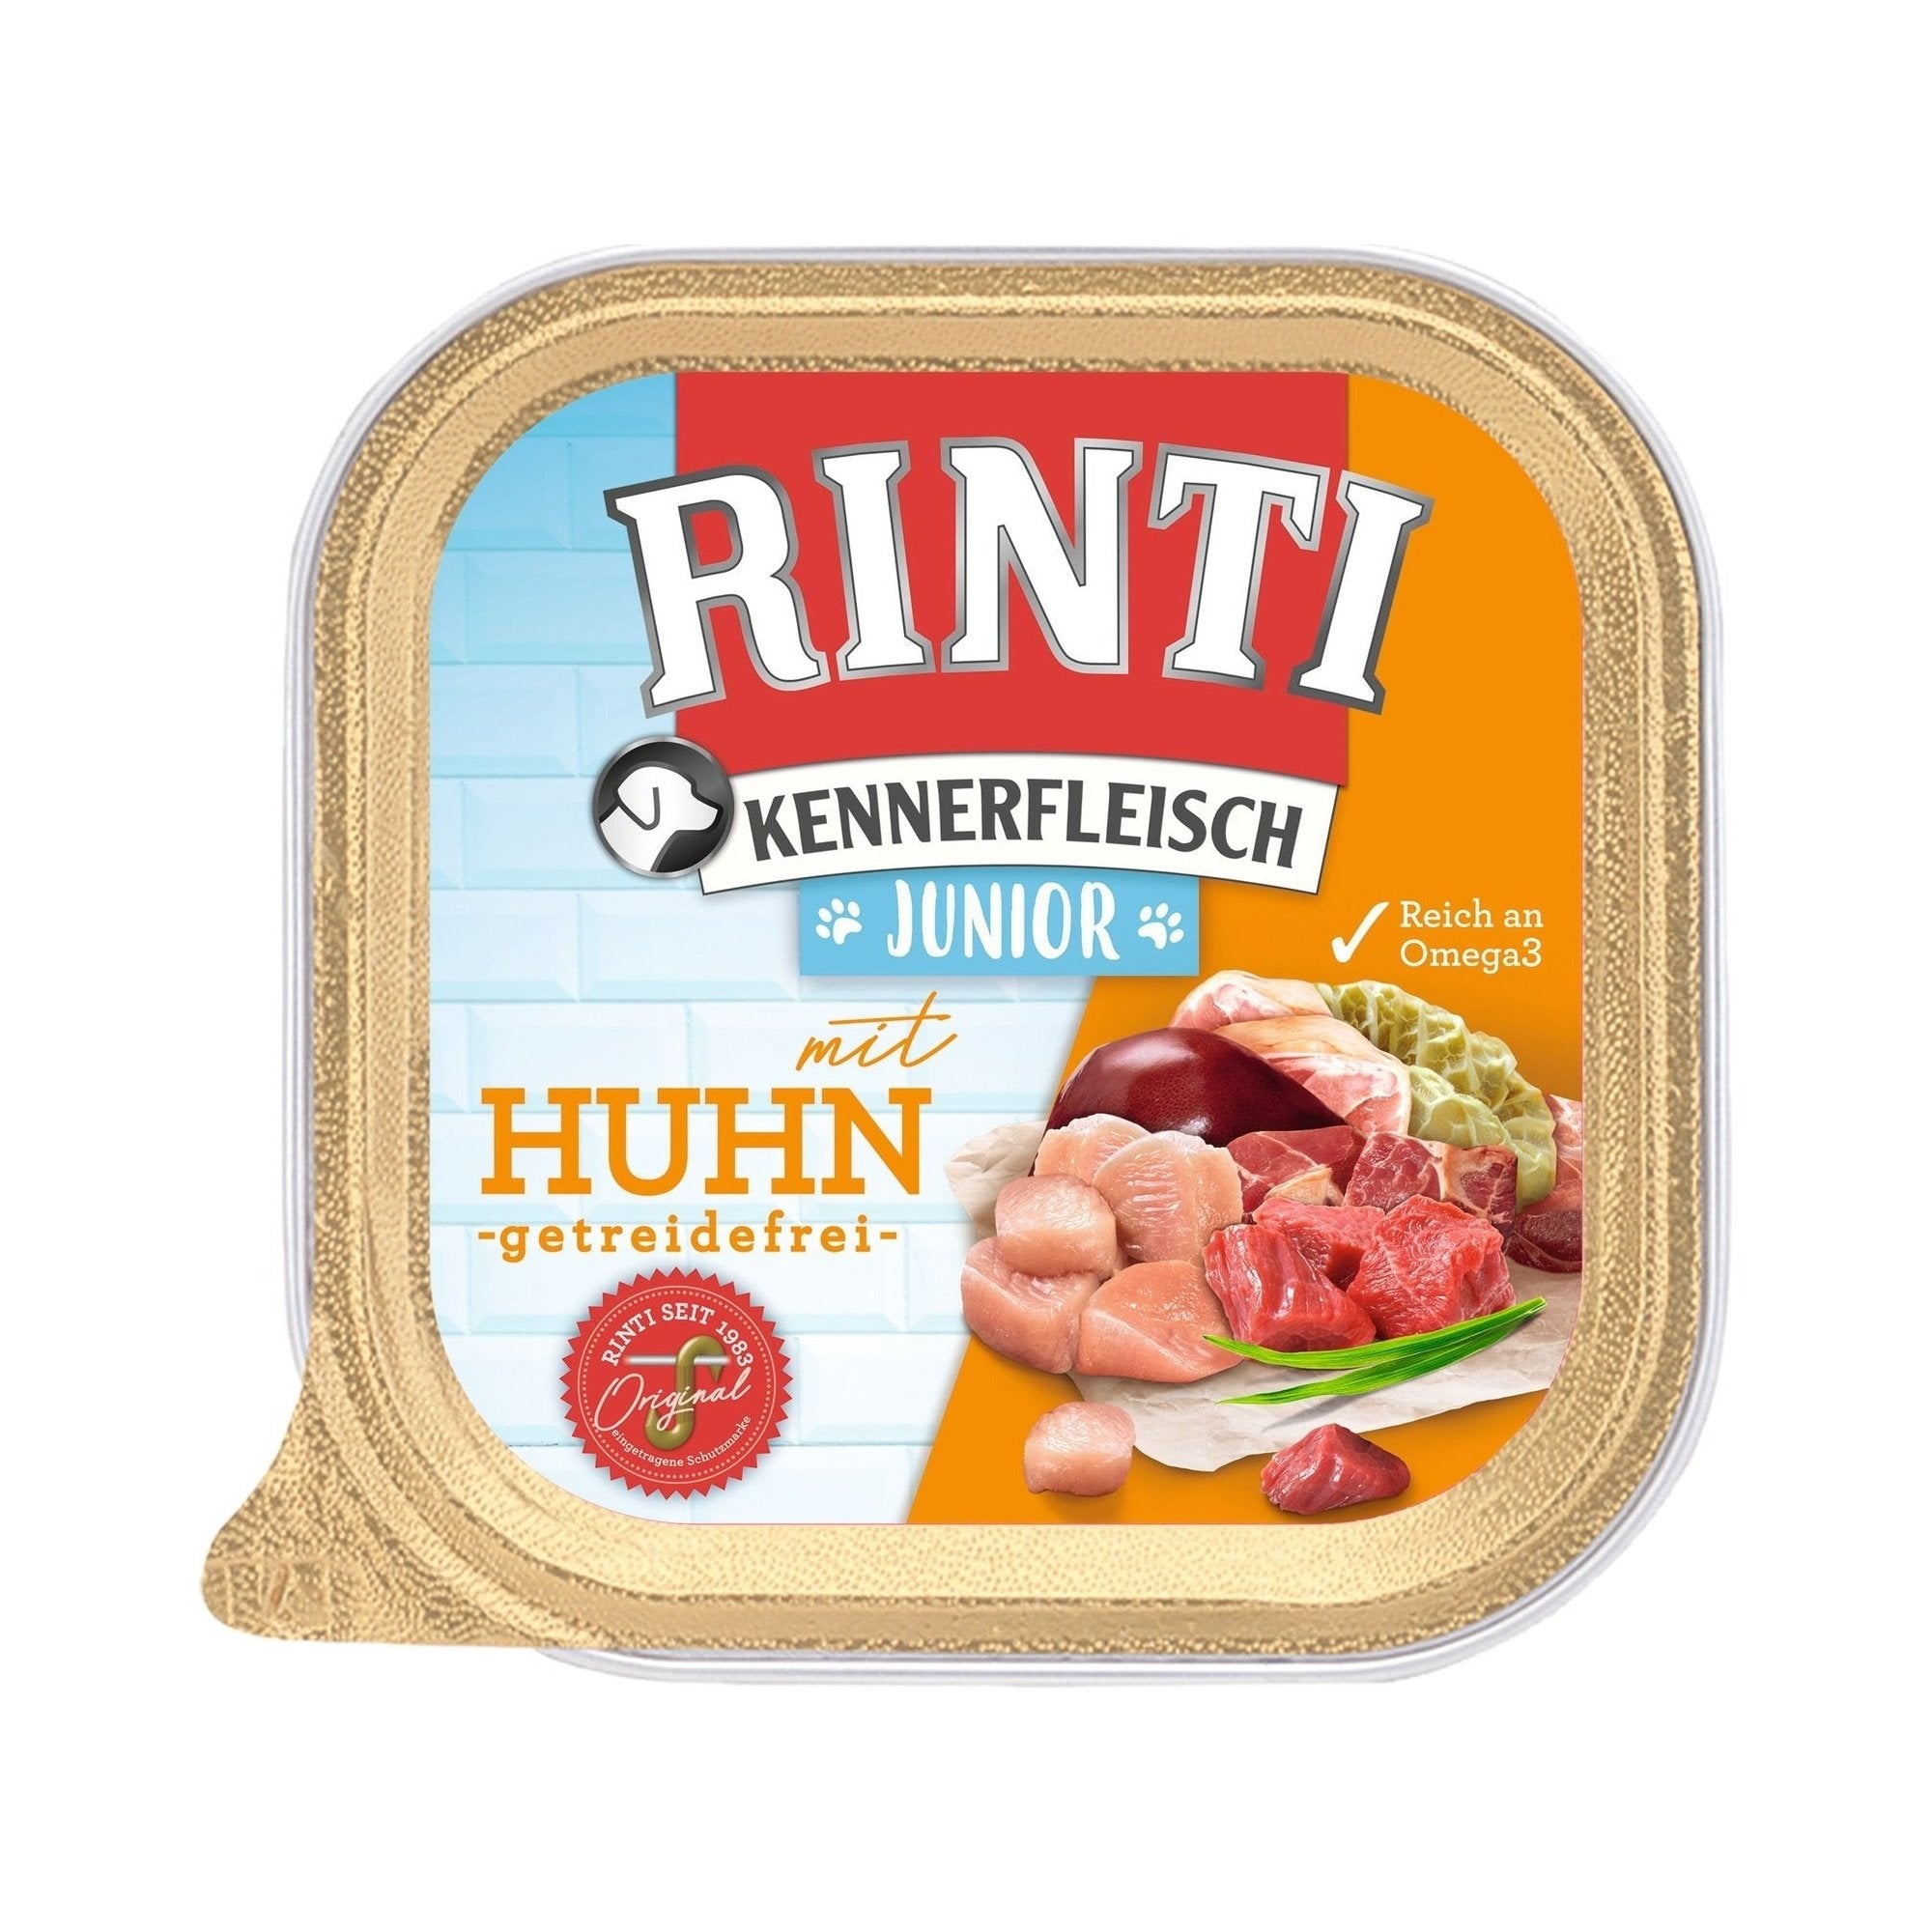 Rinti Kennerfleisch Plus Junior mit Huhn - zoo.de